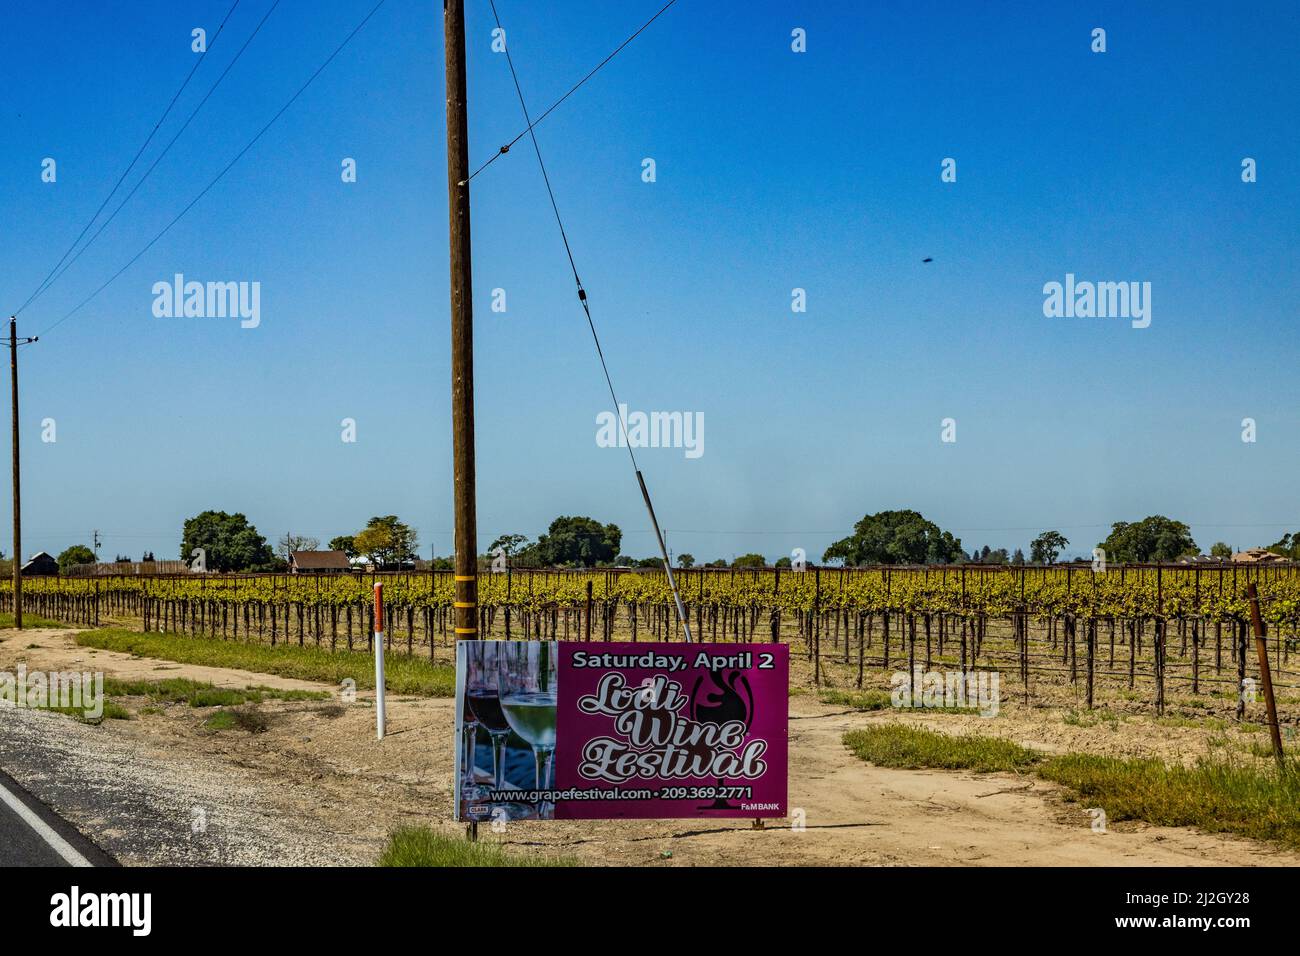 A Lodi Grape Festival sign in Lodi California USA Stock Photo